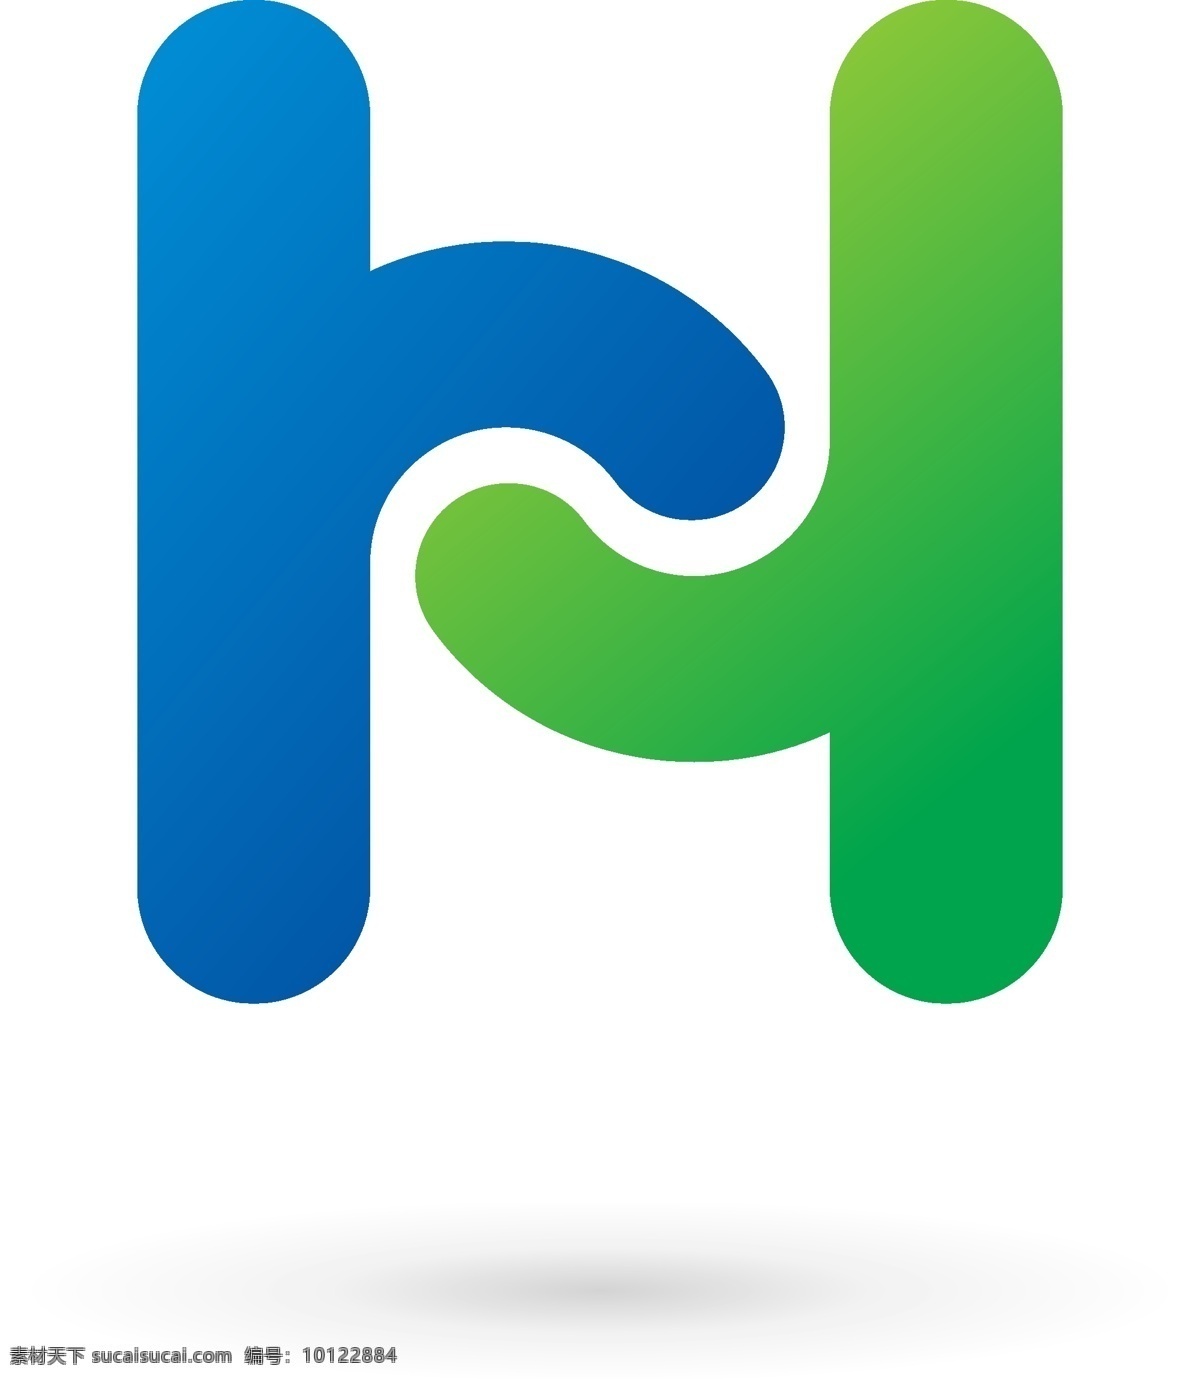 字母 造型 标识 logo 英文 科技 标志 创意 广告 企业 互联网 科技logo 领域 多用途 公司 简约